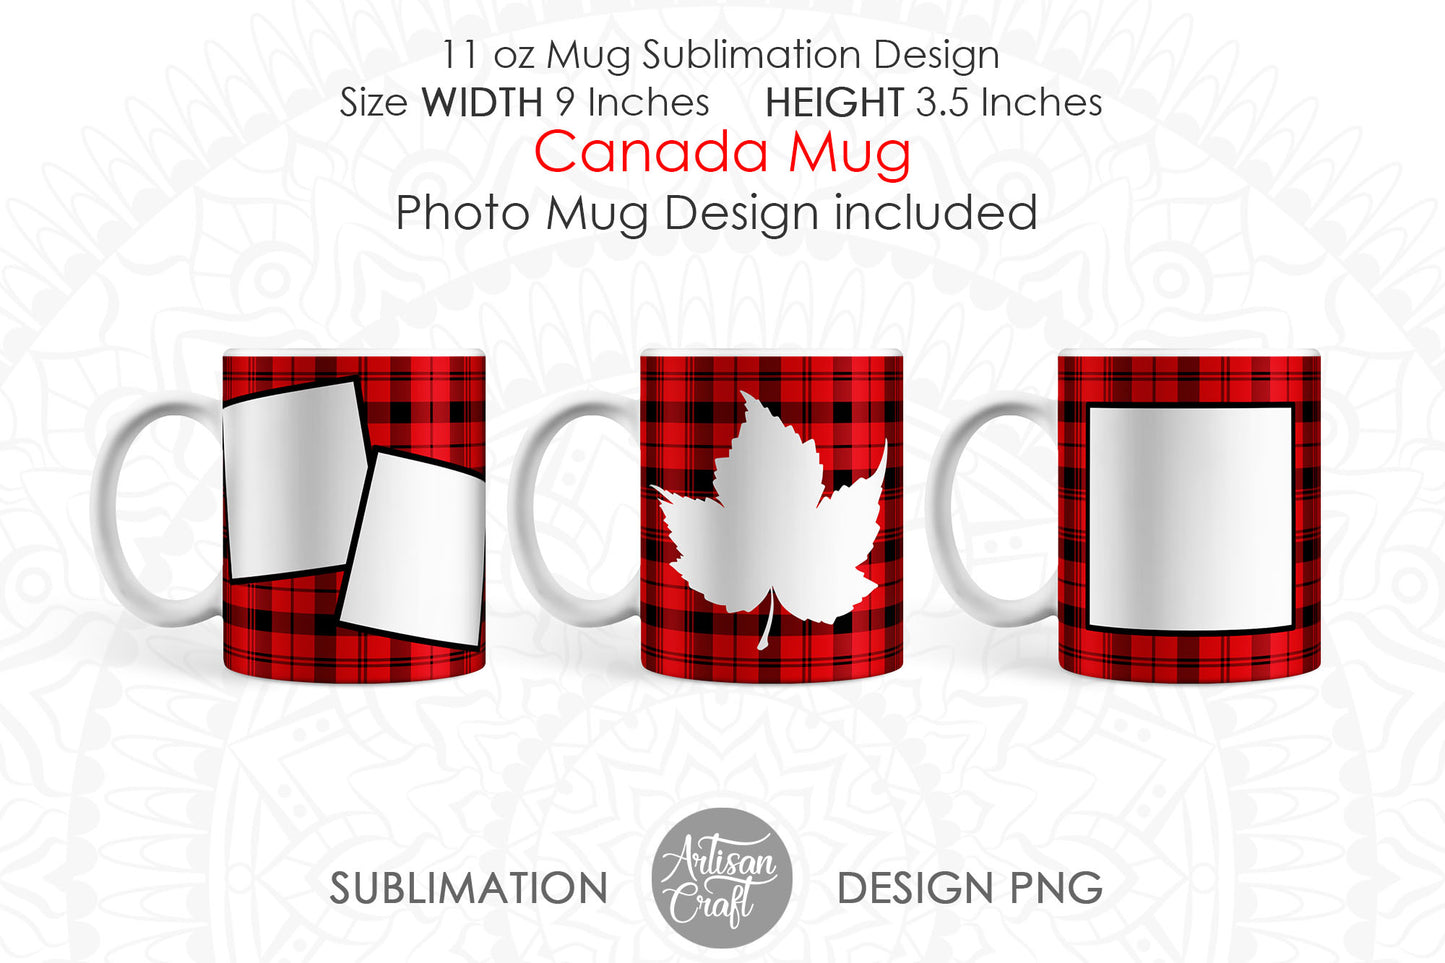 Canadian mug sublimation PNG, Photo mug template